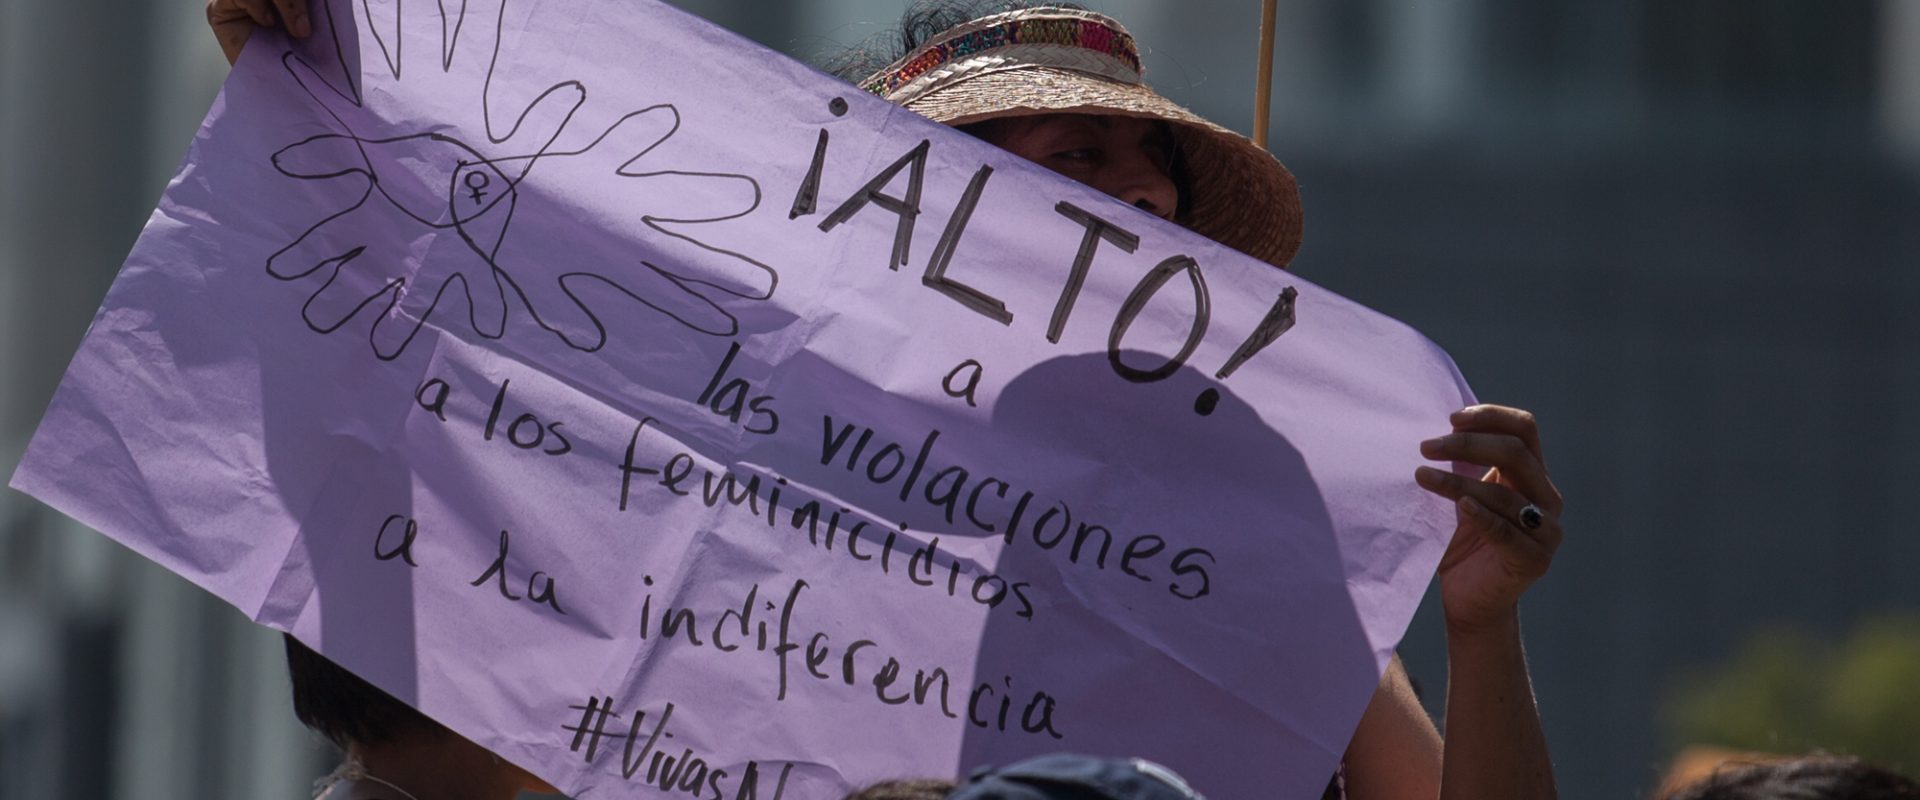 El feminicidio está alcanzando altos índices en diversas entidades de la República Mexicana. CIMACFoto: César Martínez López.